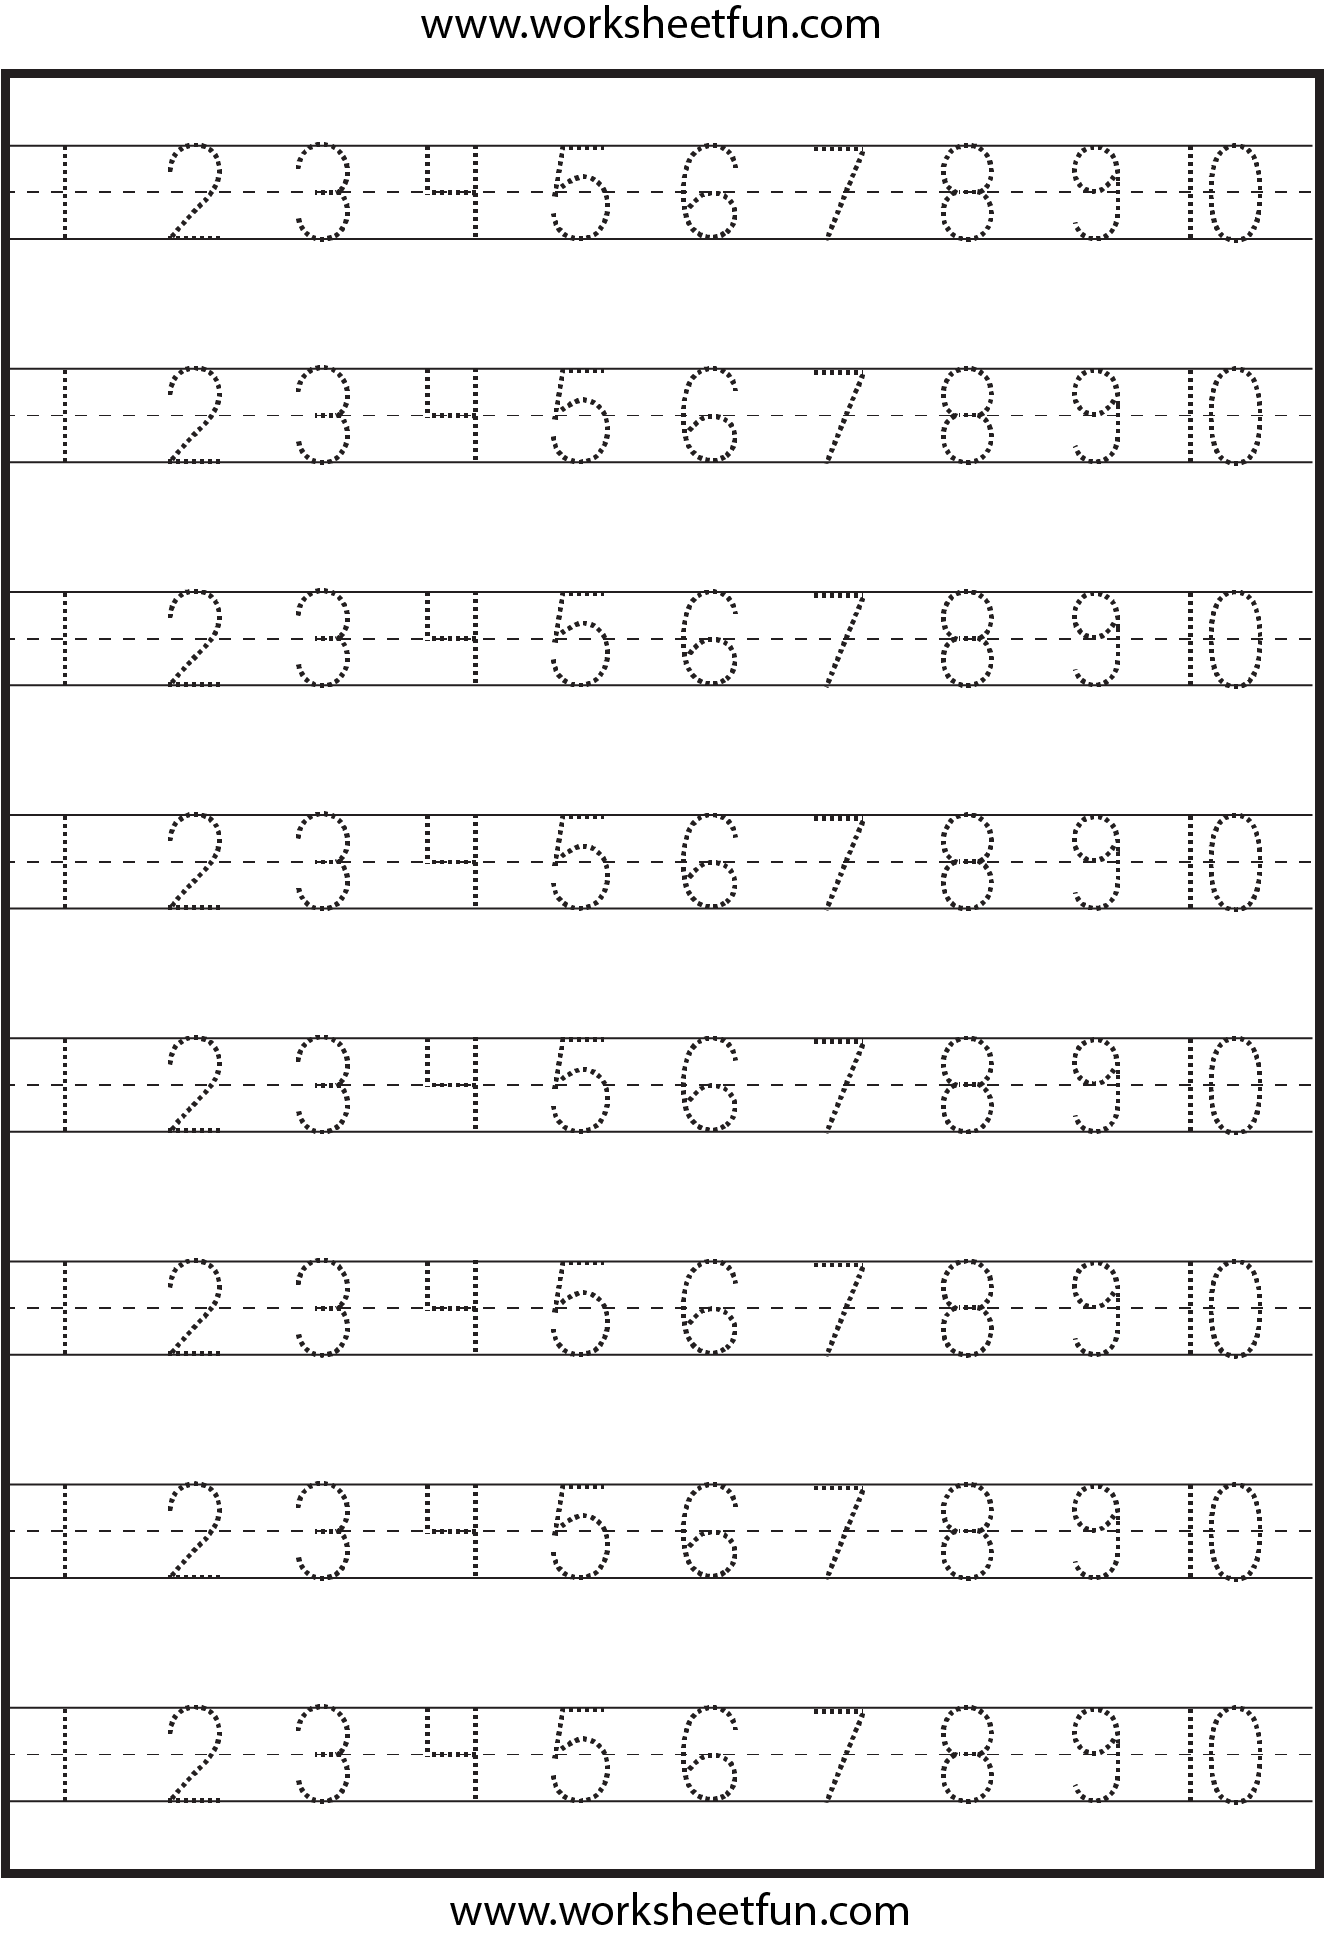 free-printable-number-worksheets-for-kindergarten